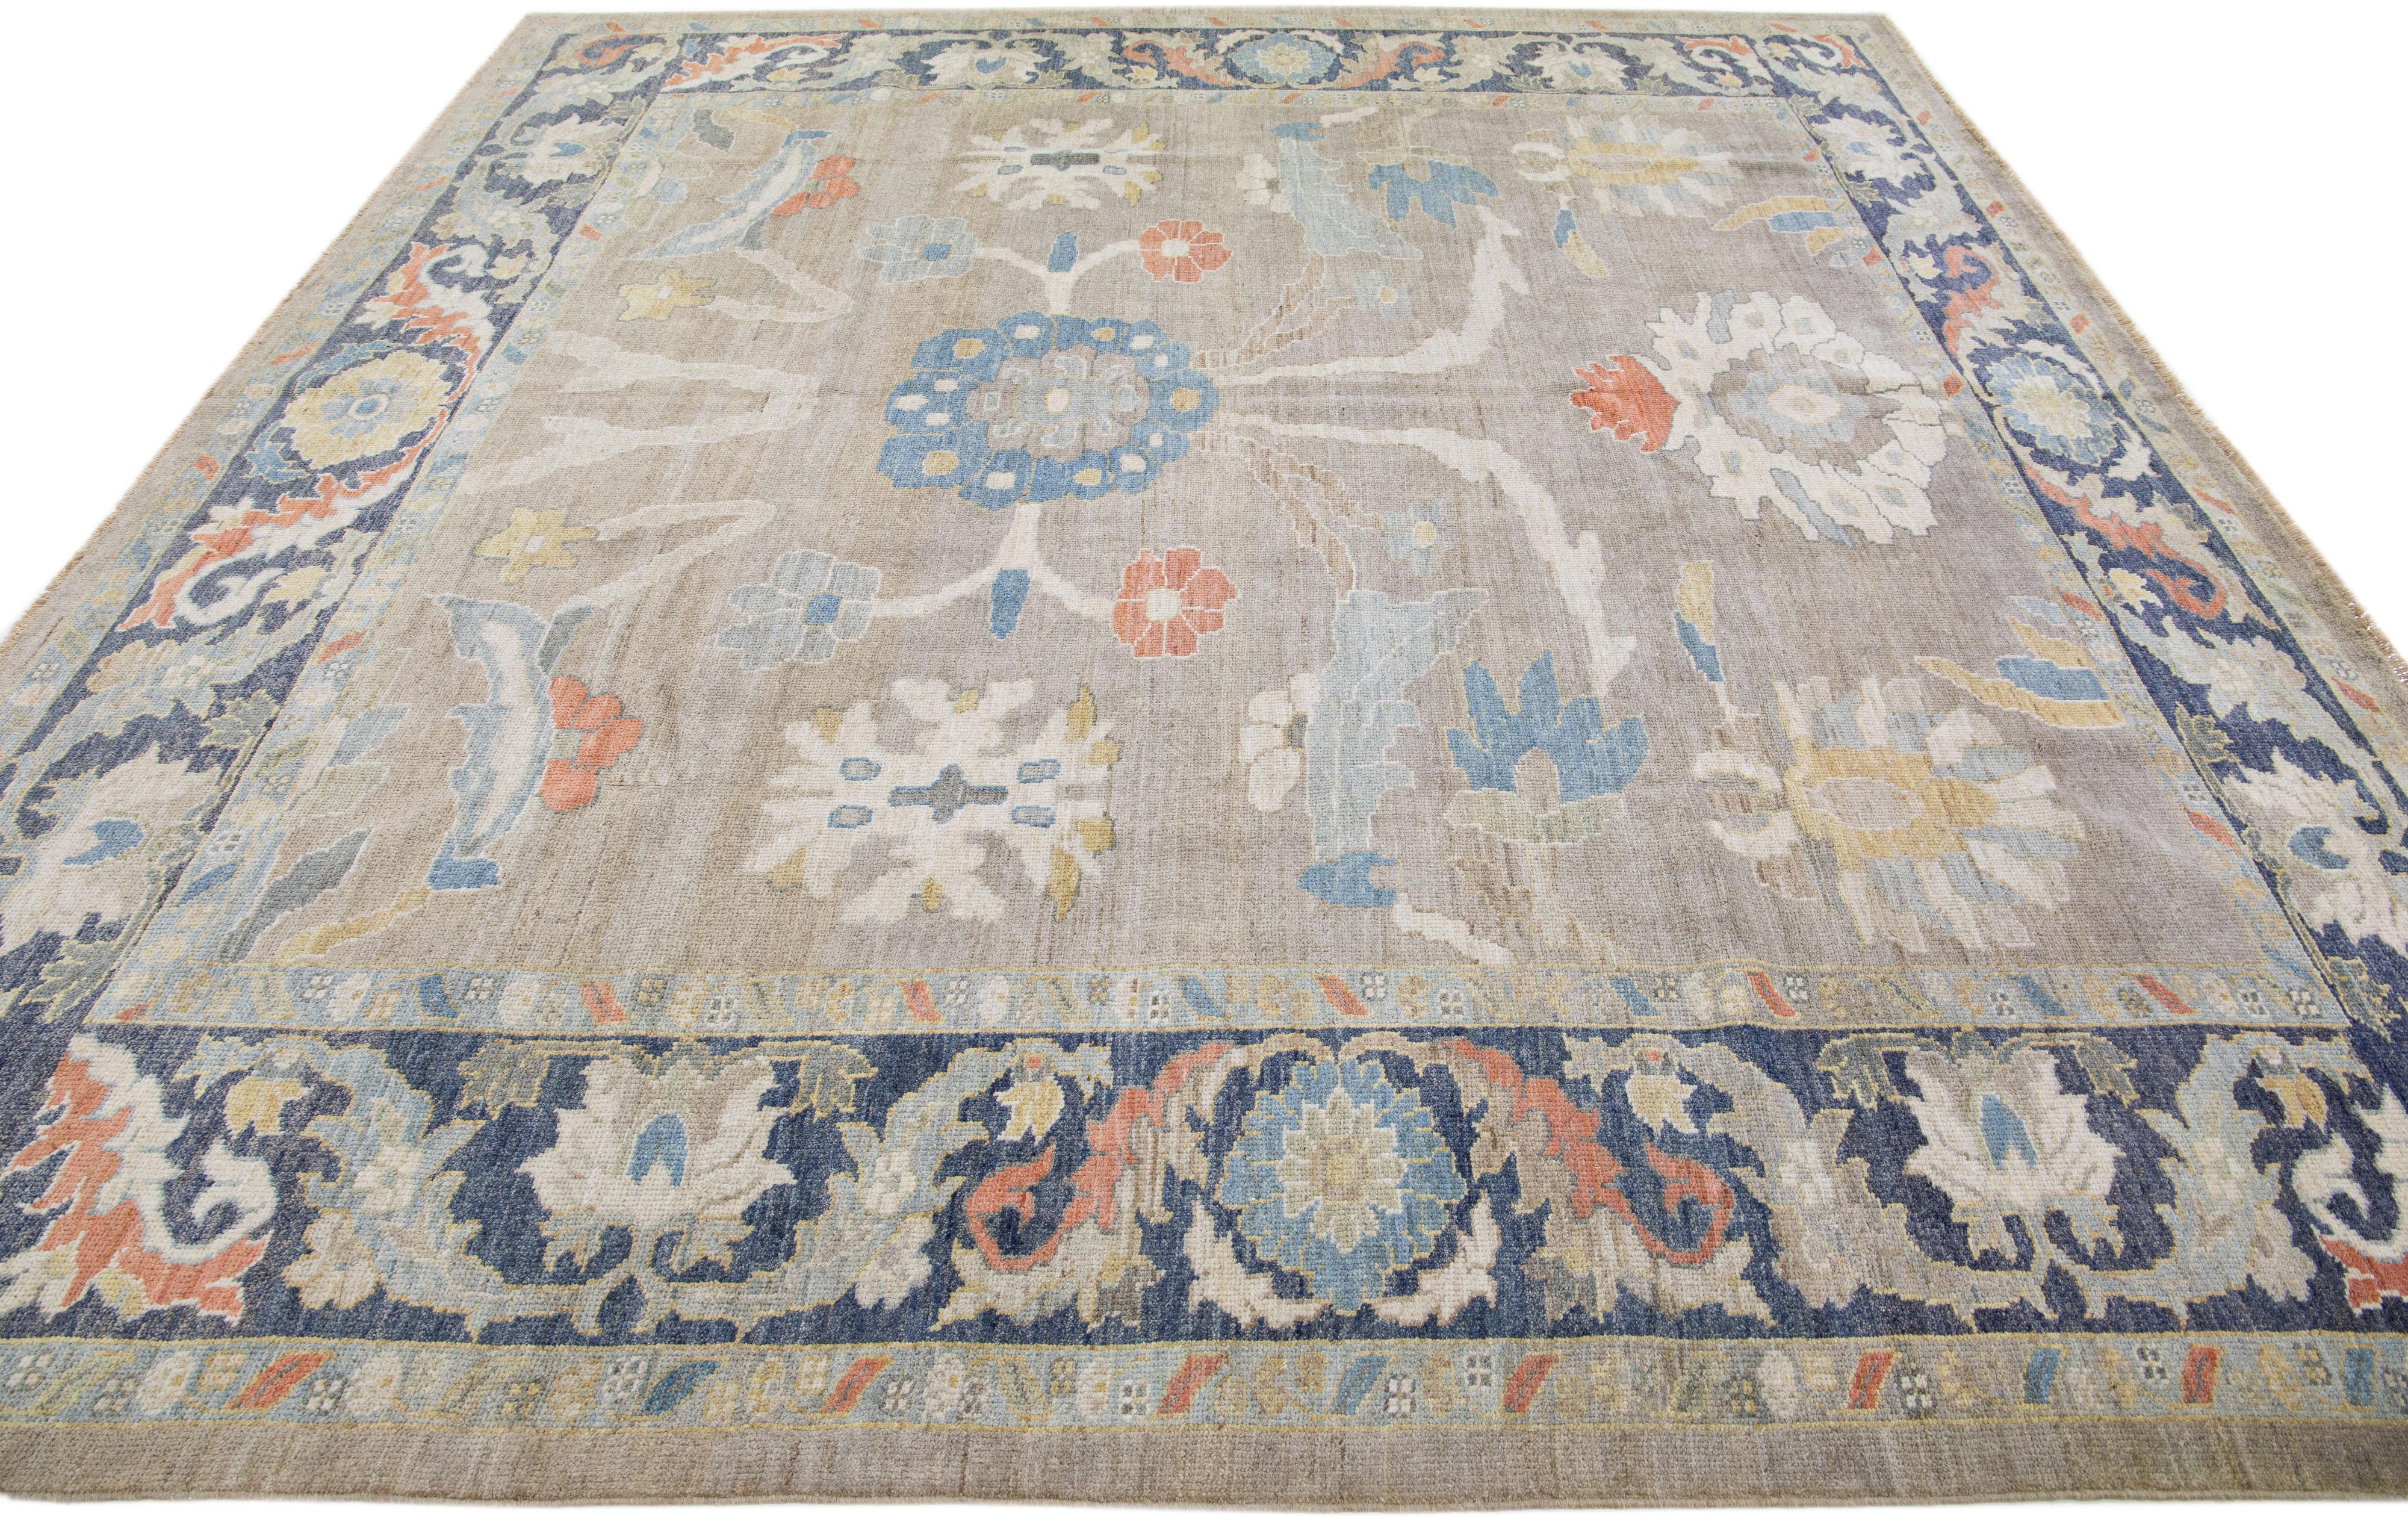 Schöner moderner Sultanabad Teppich aus handgeknüpfter Wolle mit beigem Farbfeld. Dieser Teppich hat einen marineblauen Rahmen mit mehrfarbigen Akzenten in einem wunderschönen floralen Allover-Muster.

Dieser Teppich misst: 10'2